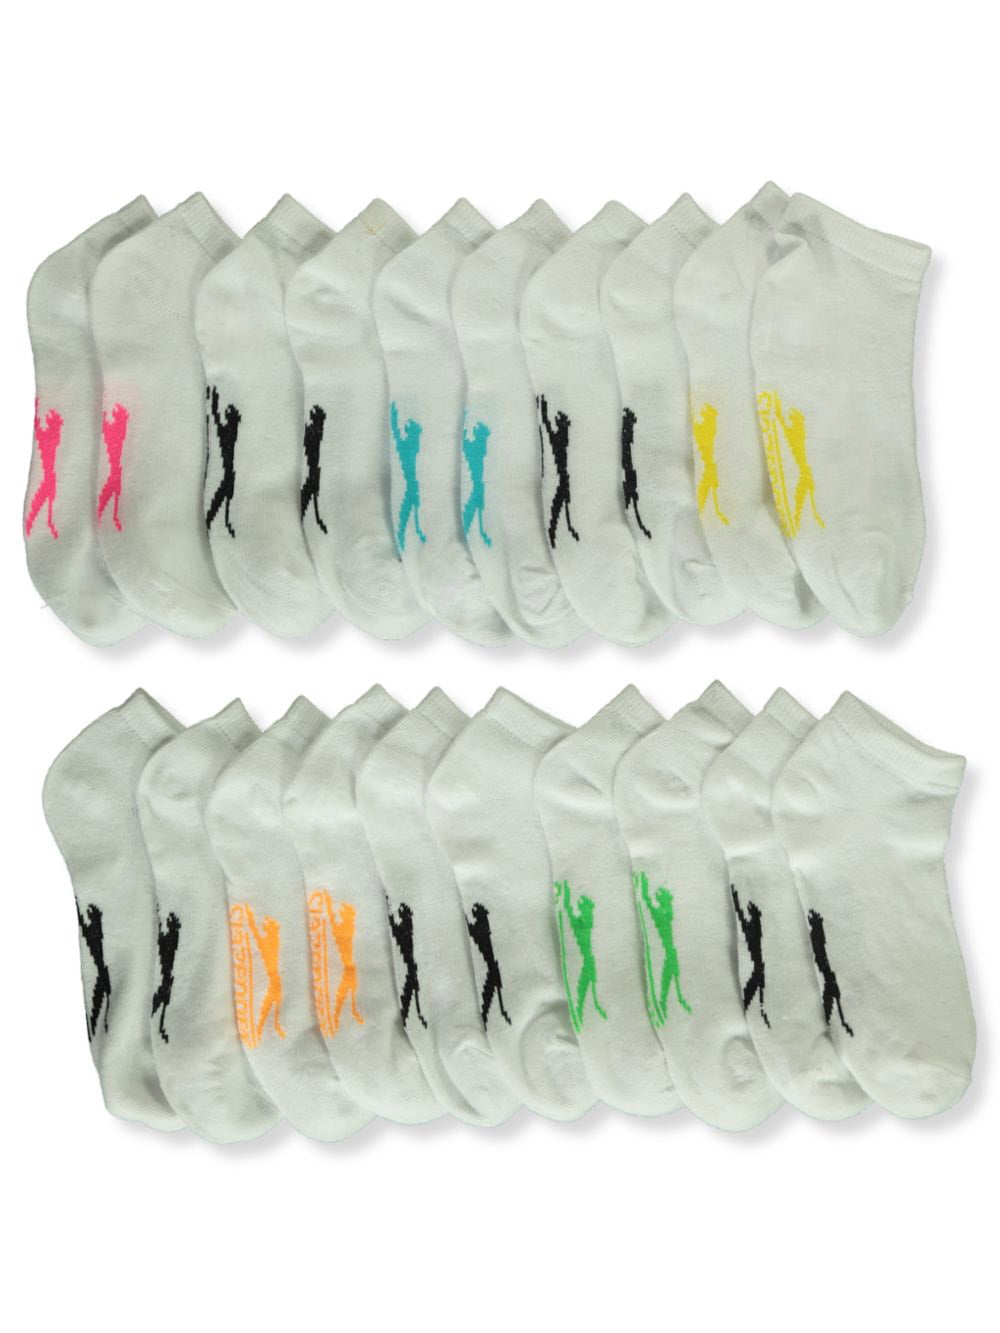 5 Pack Slazenger Girls/Boys Sports Socks Crew Socks Tennis Sizes 1 2 3 4 5 6 